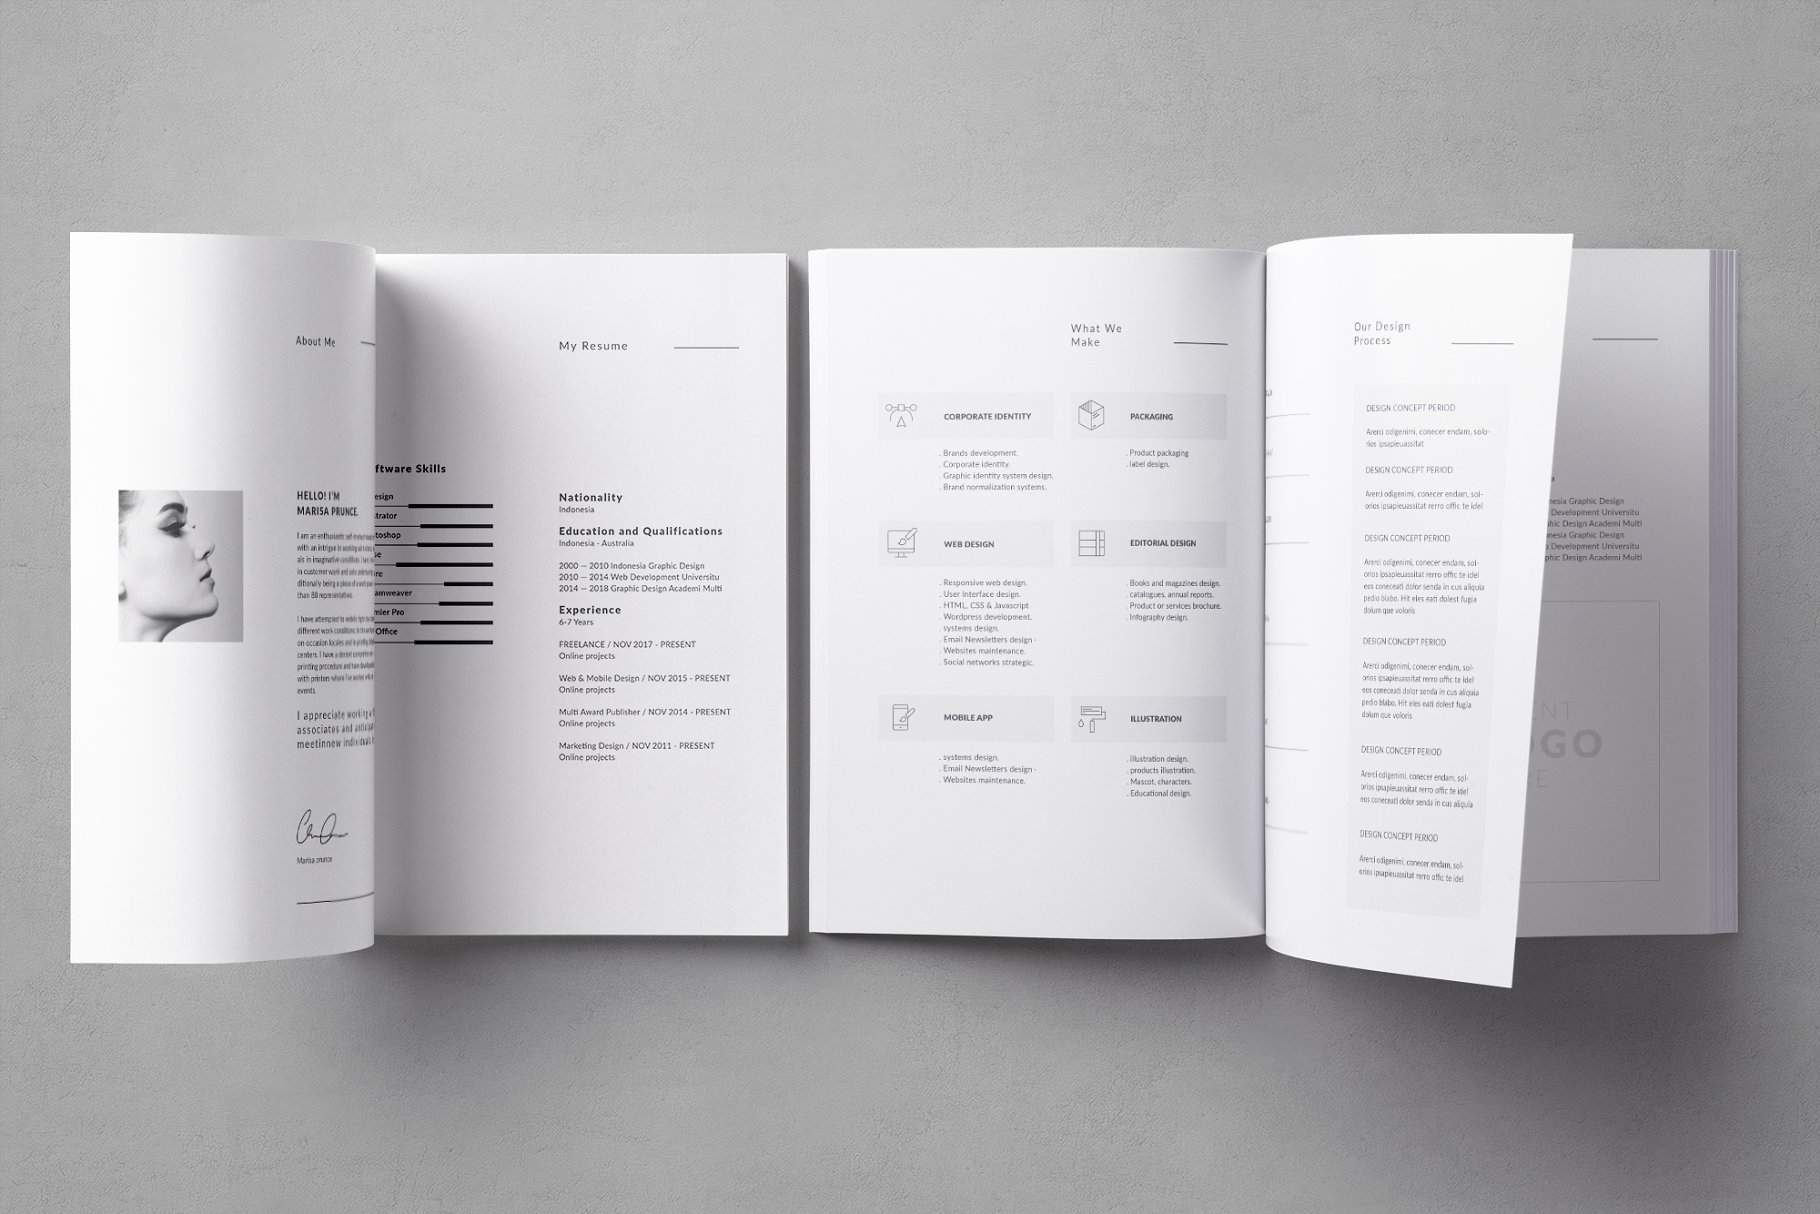 企业画册&产品手册模板 Portfolio插图(1)